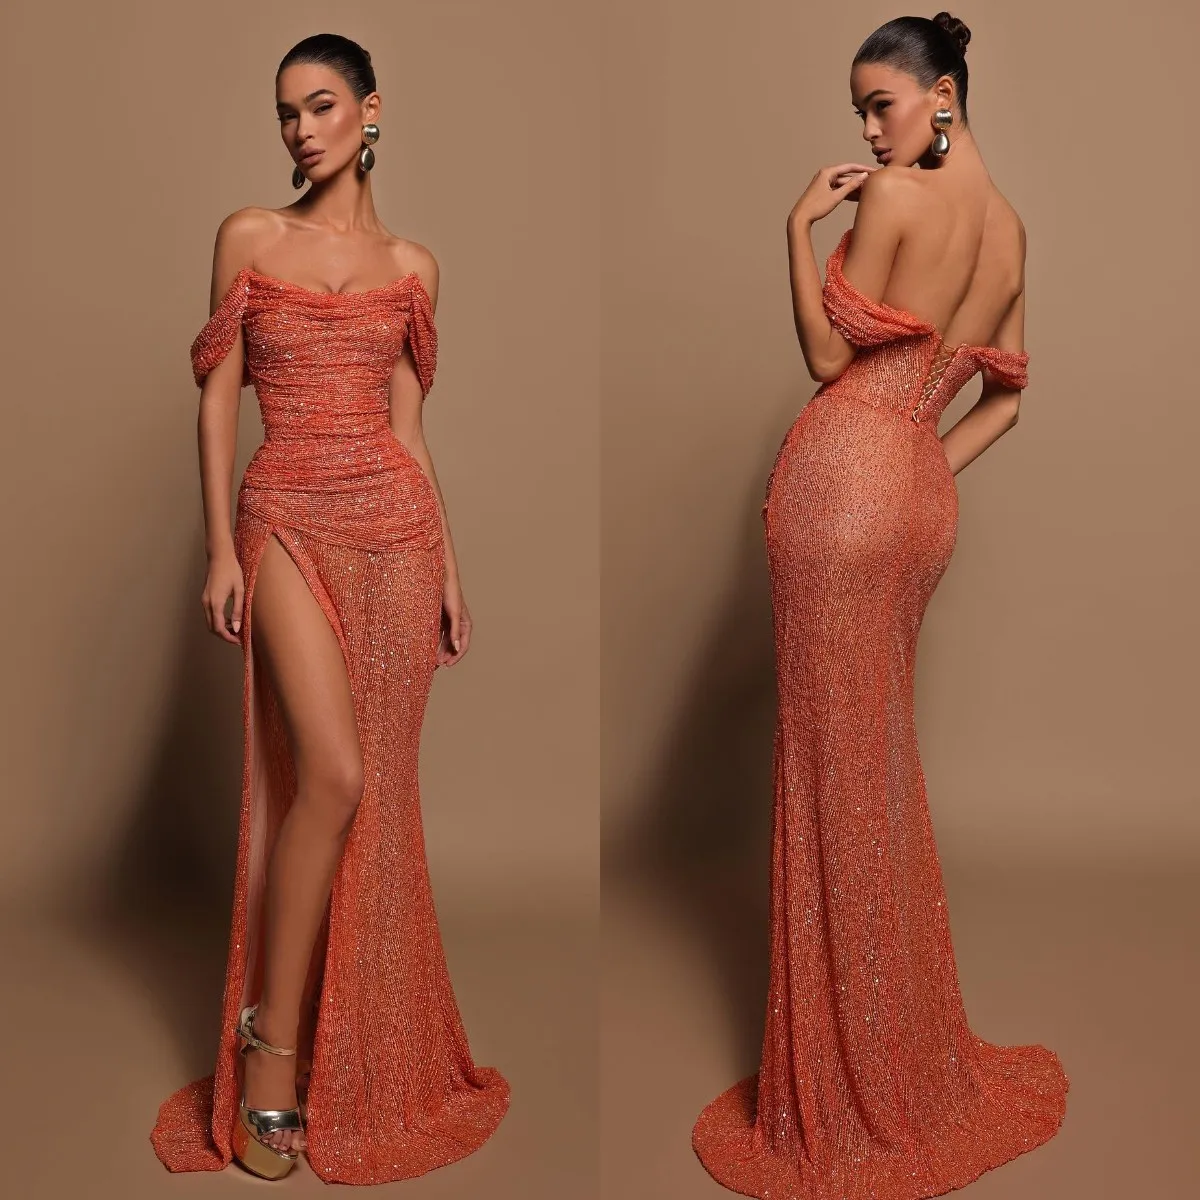 Robes de soirée sirène orange corail élégantes épaules dénudées robe de bal paillettes fente sur la cuisse robes longues pour occasions spéciales